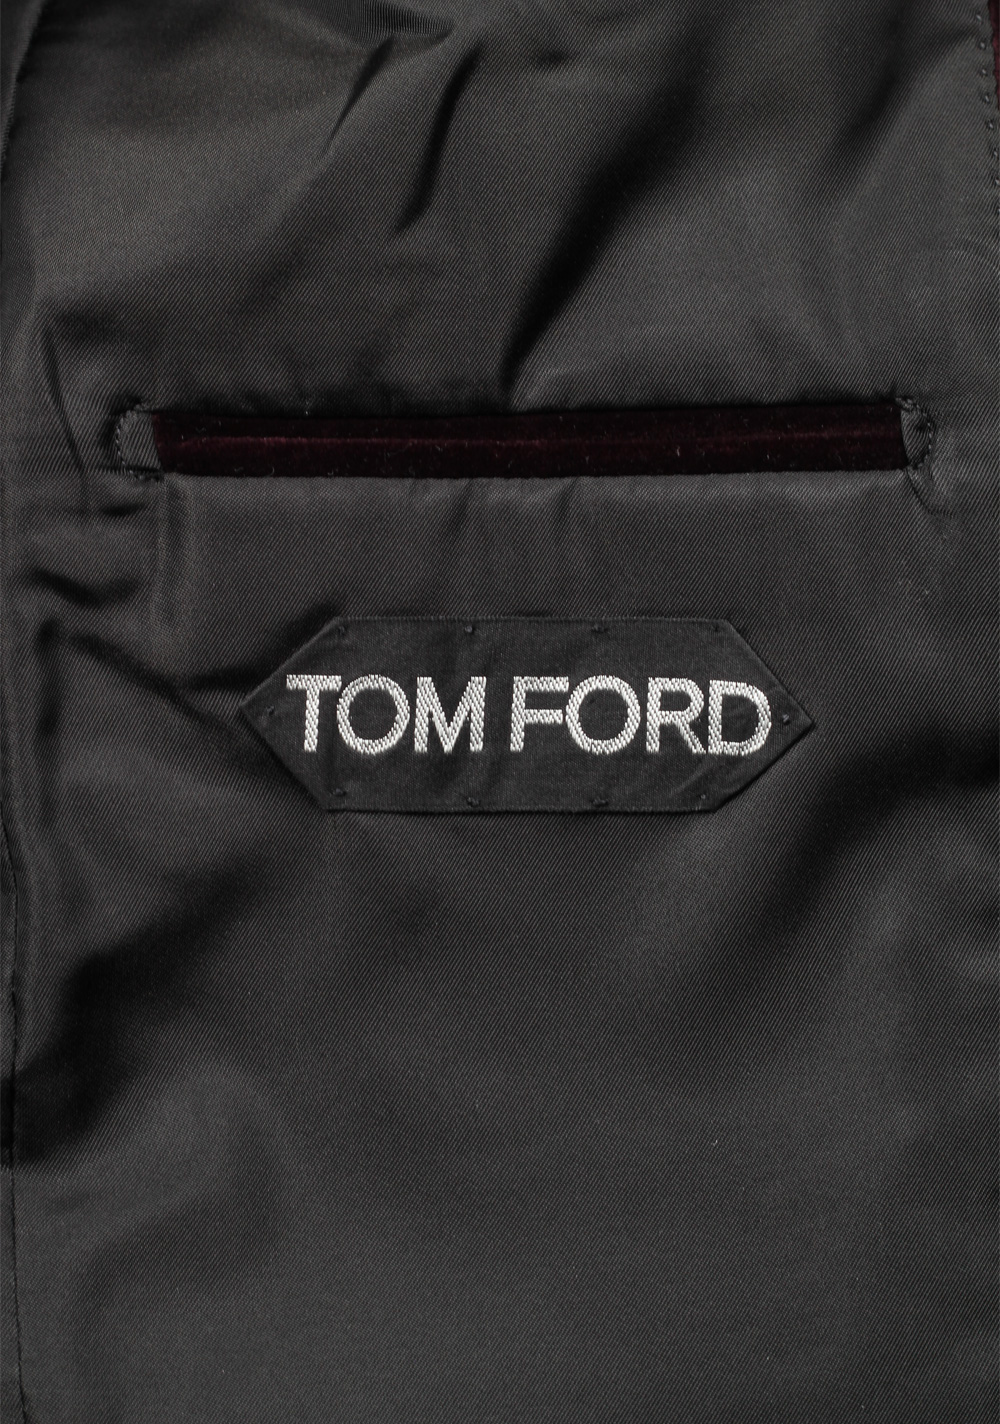 TOM FORD Shelton Aubergine Velvet Sport Coat Tuxedo Dinner Jacket Size 48 / 38R U.S. | Costume Limité